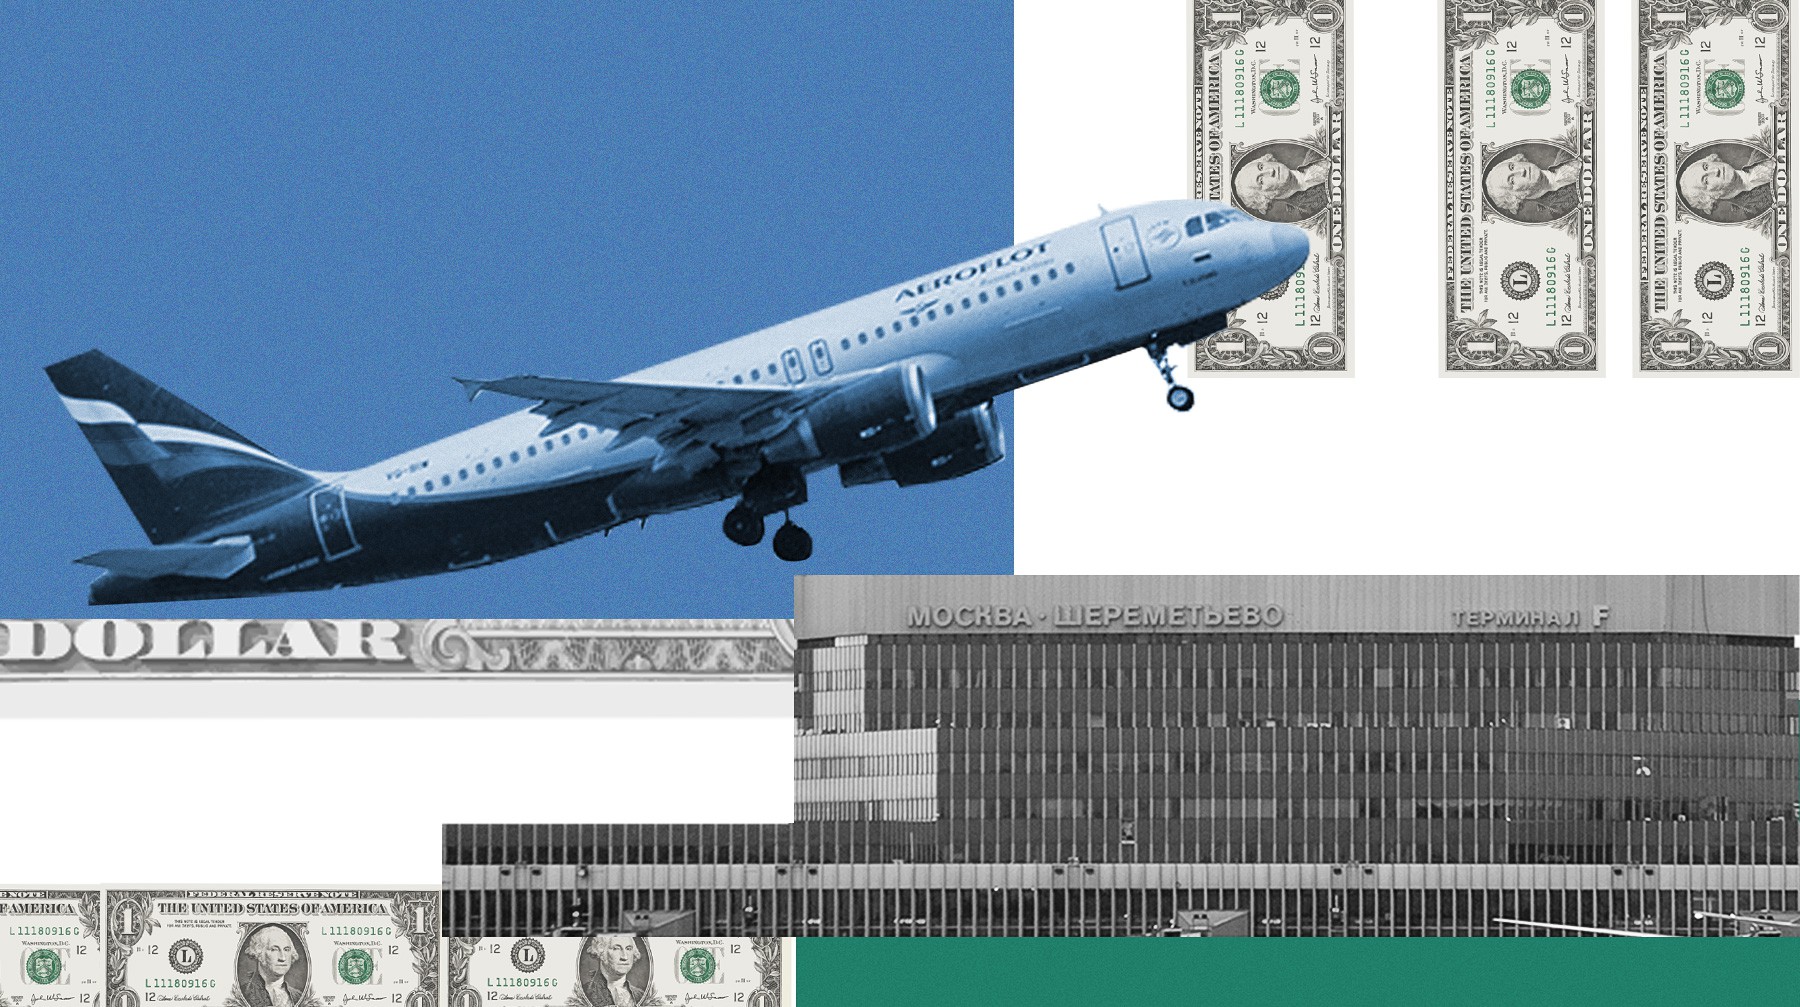 Эхо керосина: авиакомпании пытаются компенсировать потраченные на топливо средства за счет допуслуг